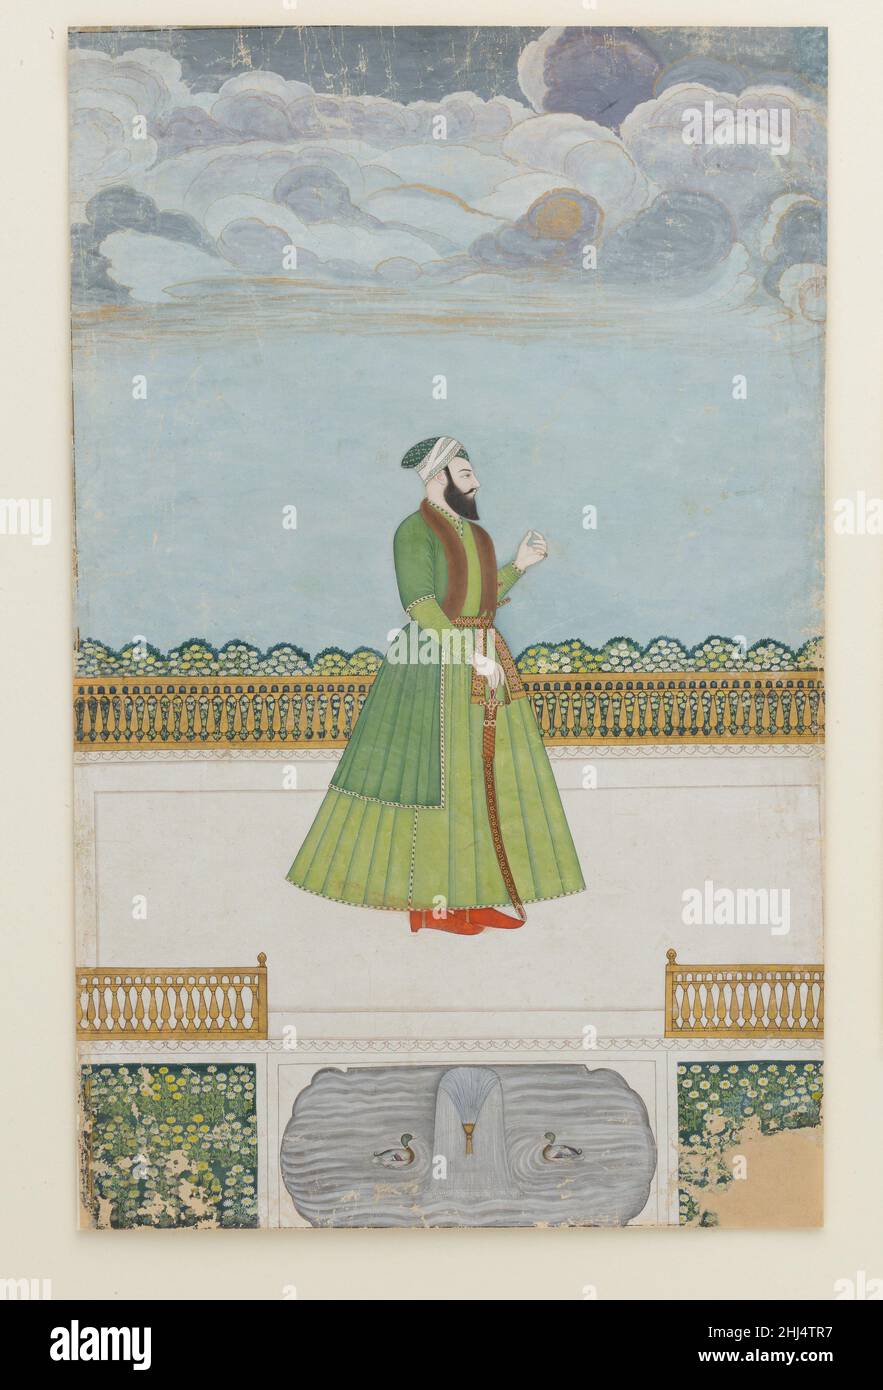 Edelmann auf einer Terrasse ca. 1780 die Ersatzeinstellung, begrenzte Palette und figürlichen Stil weisen dieses Gemälde dem späten Mughal Zentrum von Murshidabad zu. Das Porträt kann mir Jafar Khan, Nawab von Bengalen, darstellen, der Shuja' al-Daula bei der Schlacht von Plassey im Jahr 1757 verleugnen und von den Briten mit dem Thron von Bengalen belohnt wurde. Später missfiel er seinen Herren in Kalkutta und wurde zugunsten seines Schwiegersohns mir Qasim entthront, um später, in einer weiteren Glückswende, wieder eingesetzt zu werden. Adliger auf einer Terrasse. Ca. 1780. Tinte, opakes Aquarell, Silber und Gold auf Papier. Zugeschl Stockfoto